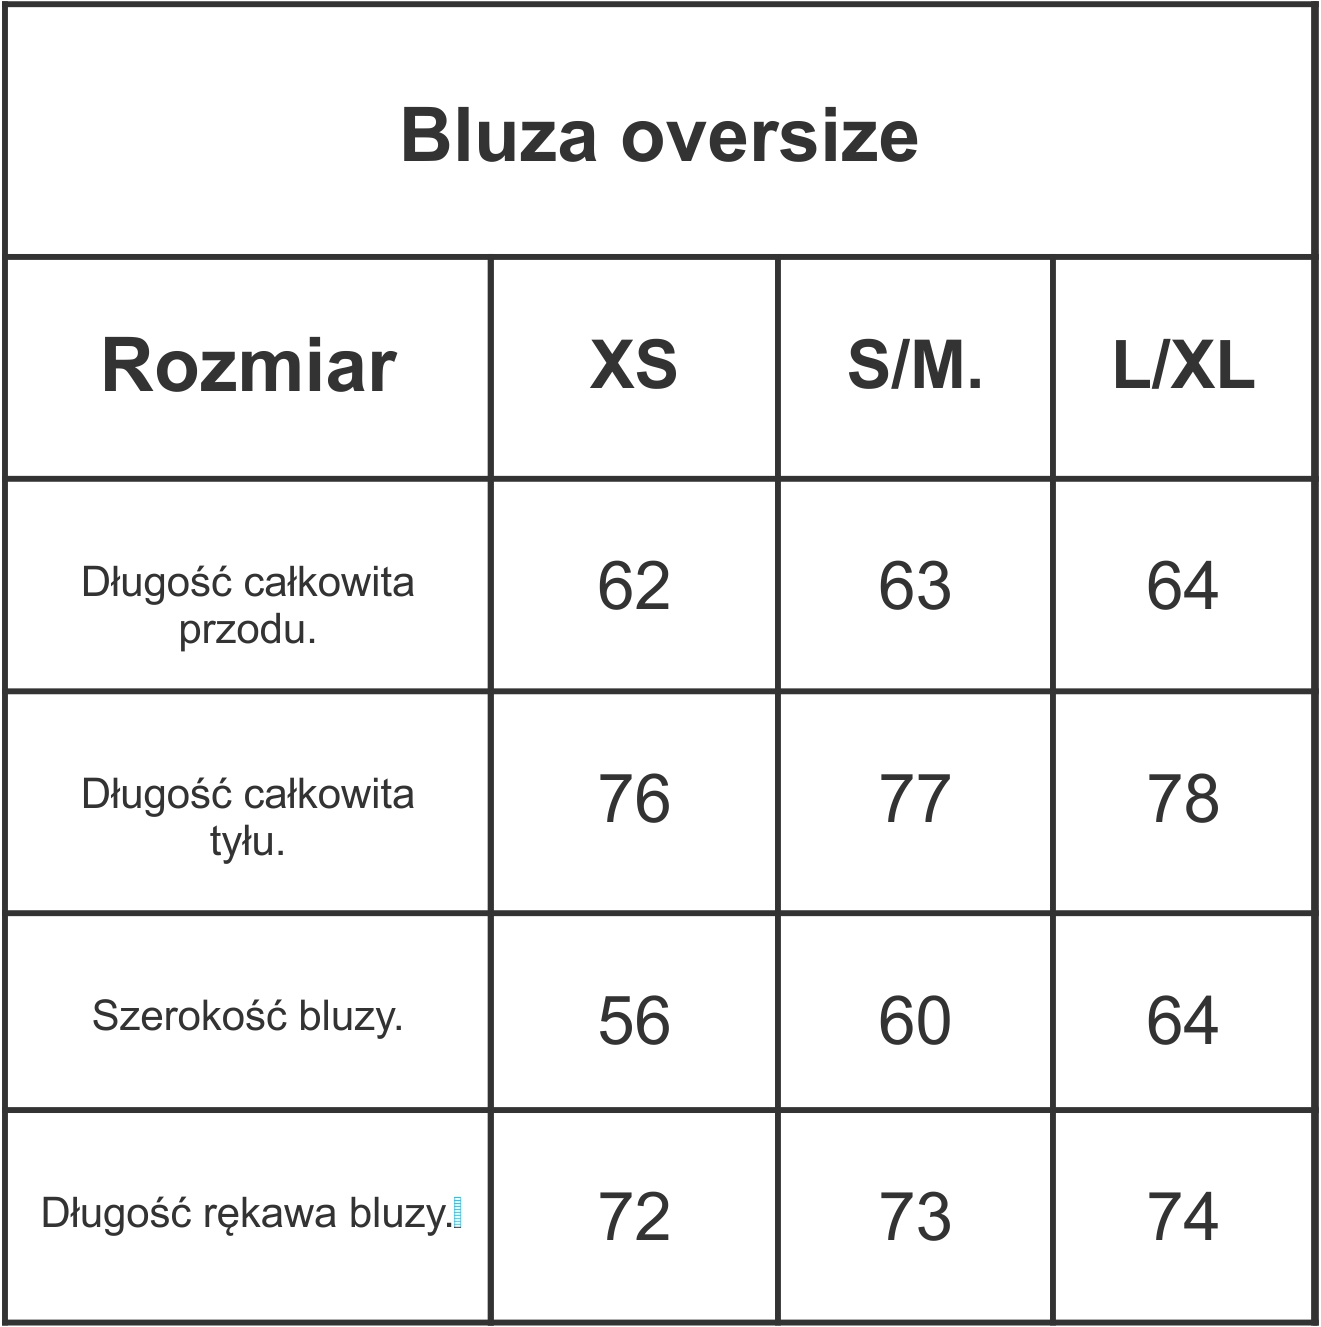 Bluza Oversize